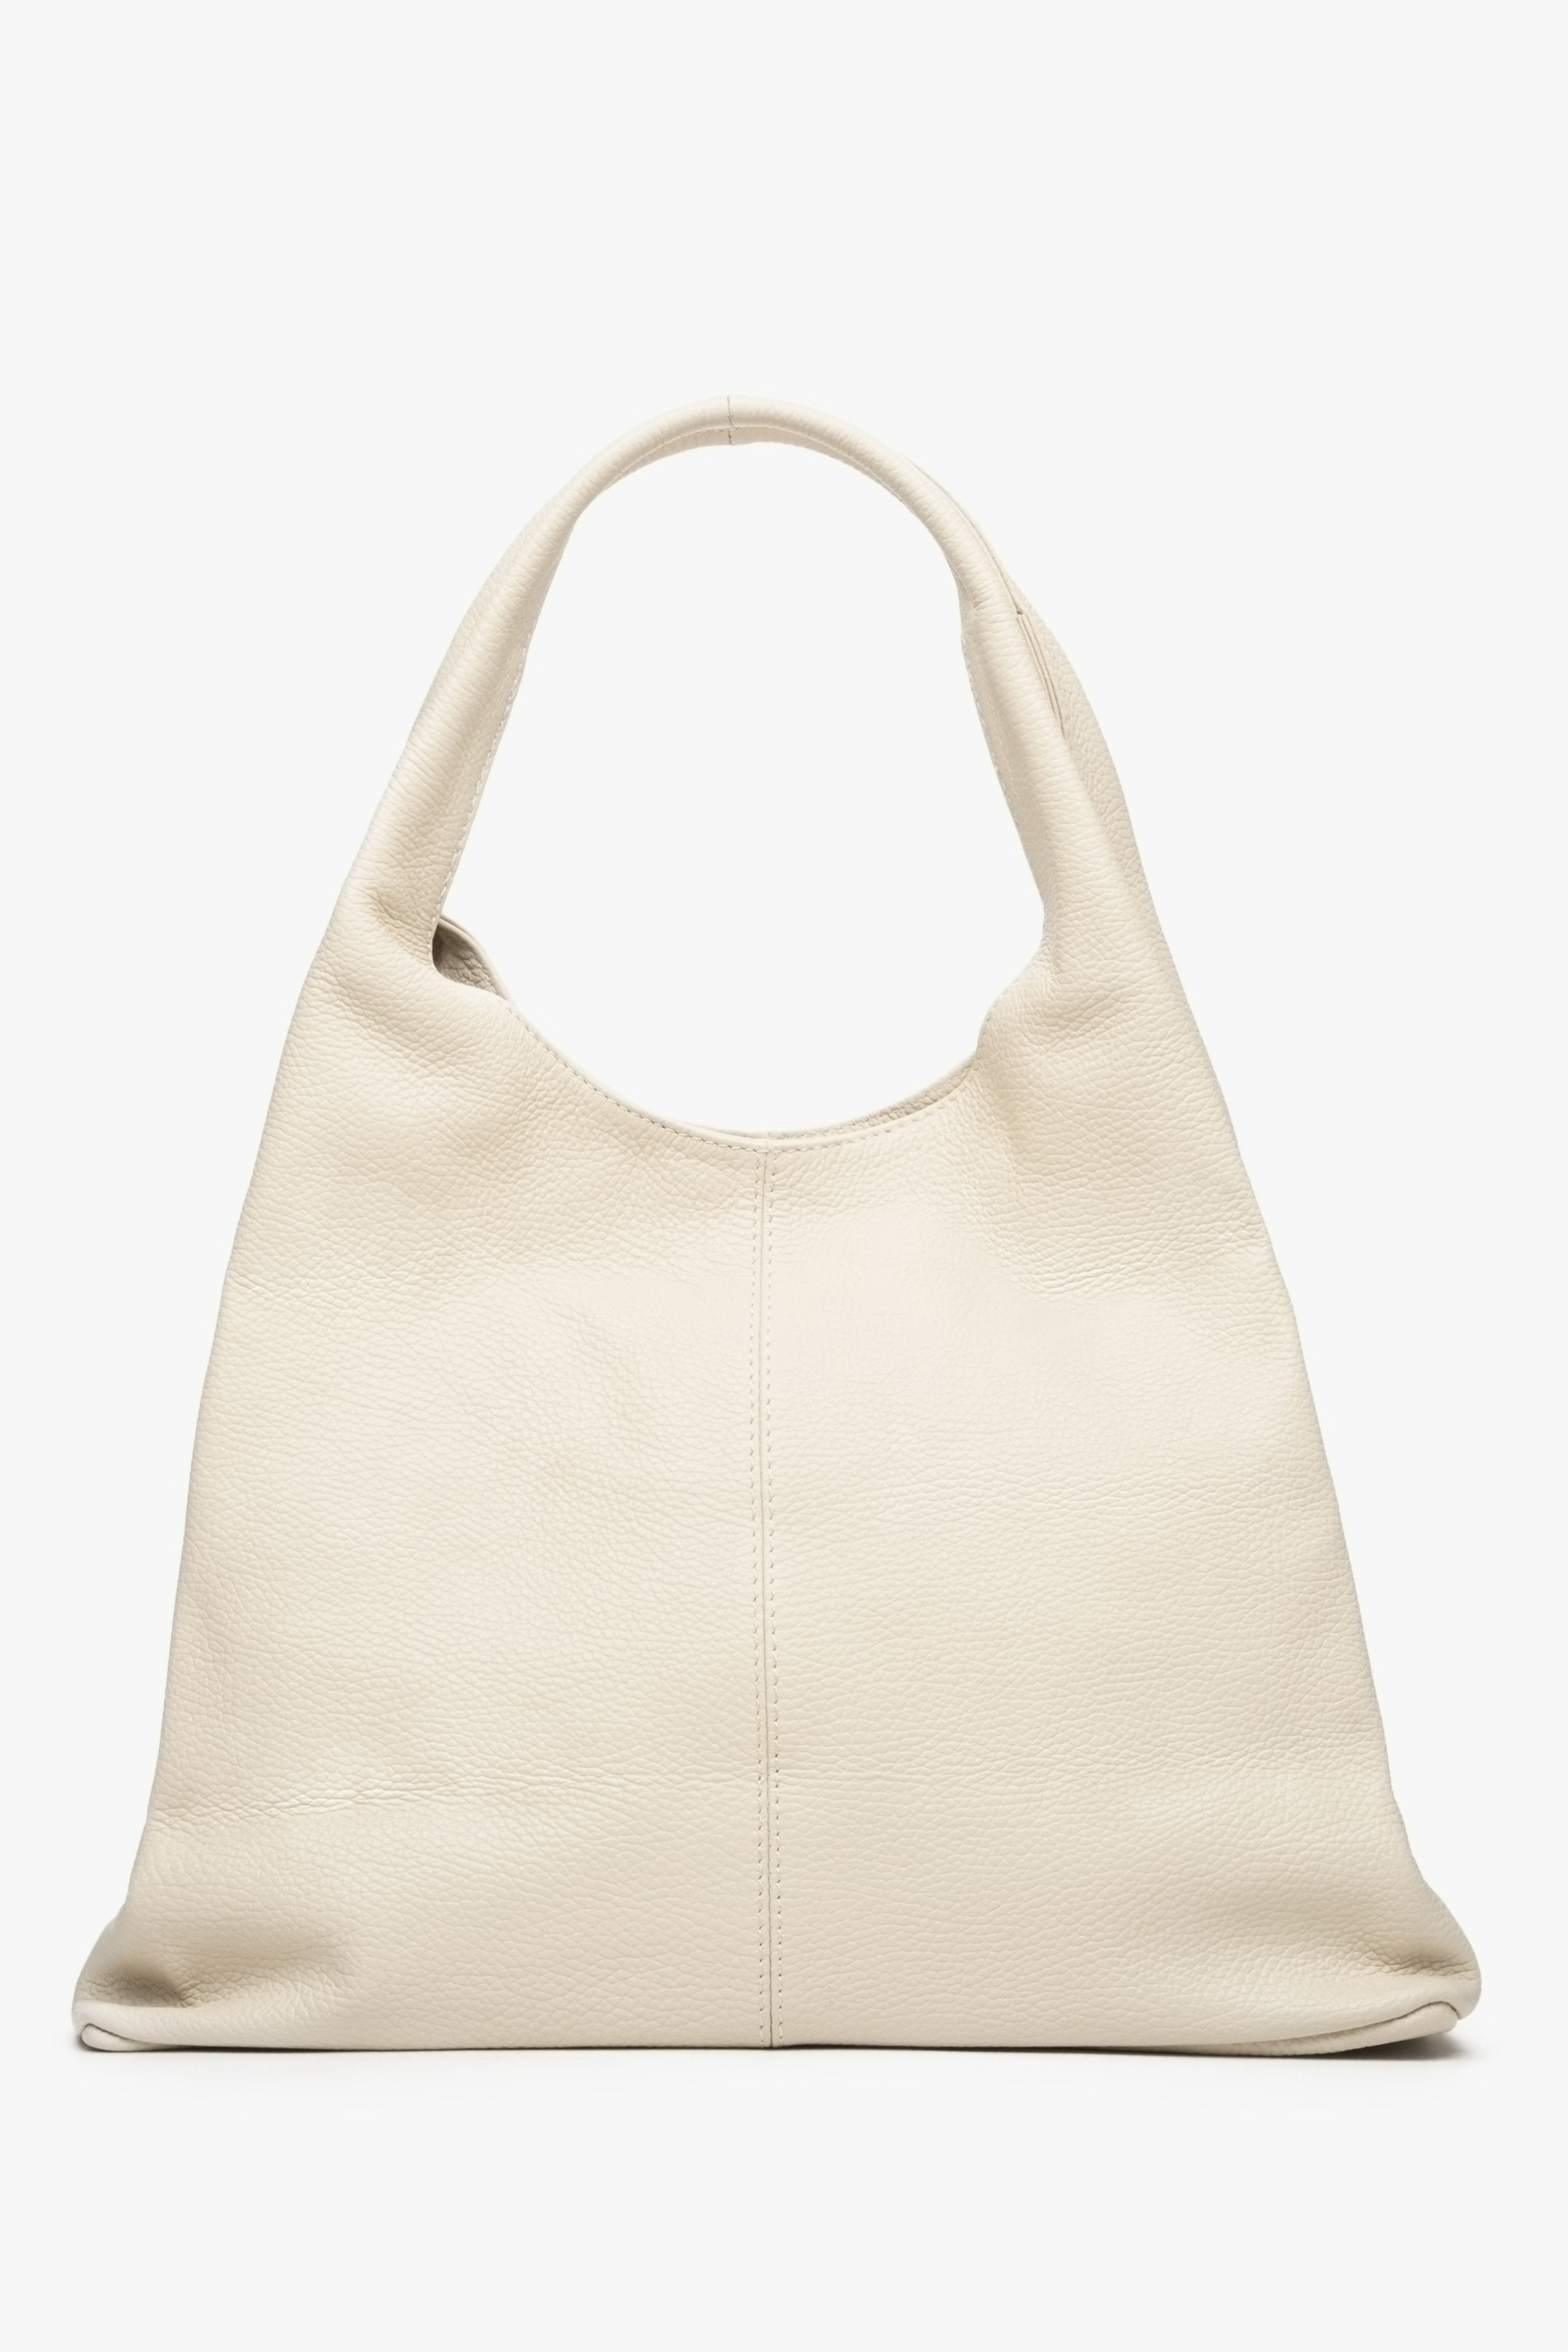 Damska, jasnobeżowa torebka na ramię z włoskiej skóry naturalnej - prezentacja tyłu modelu.